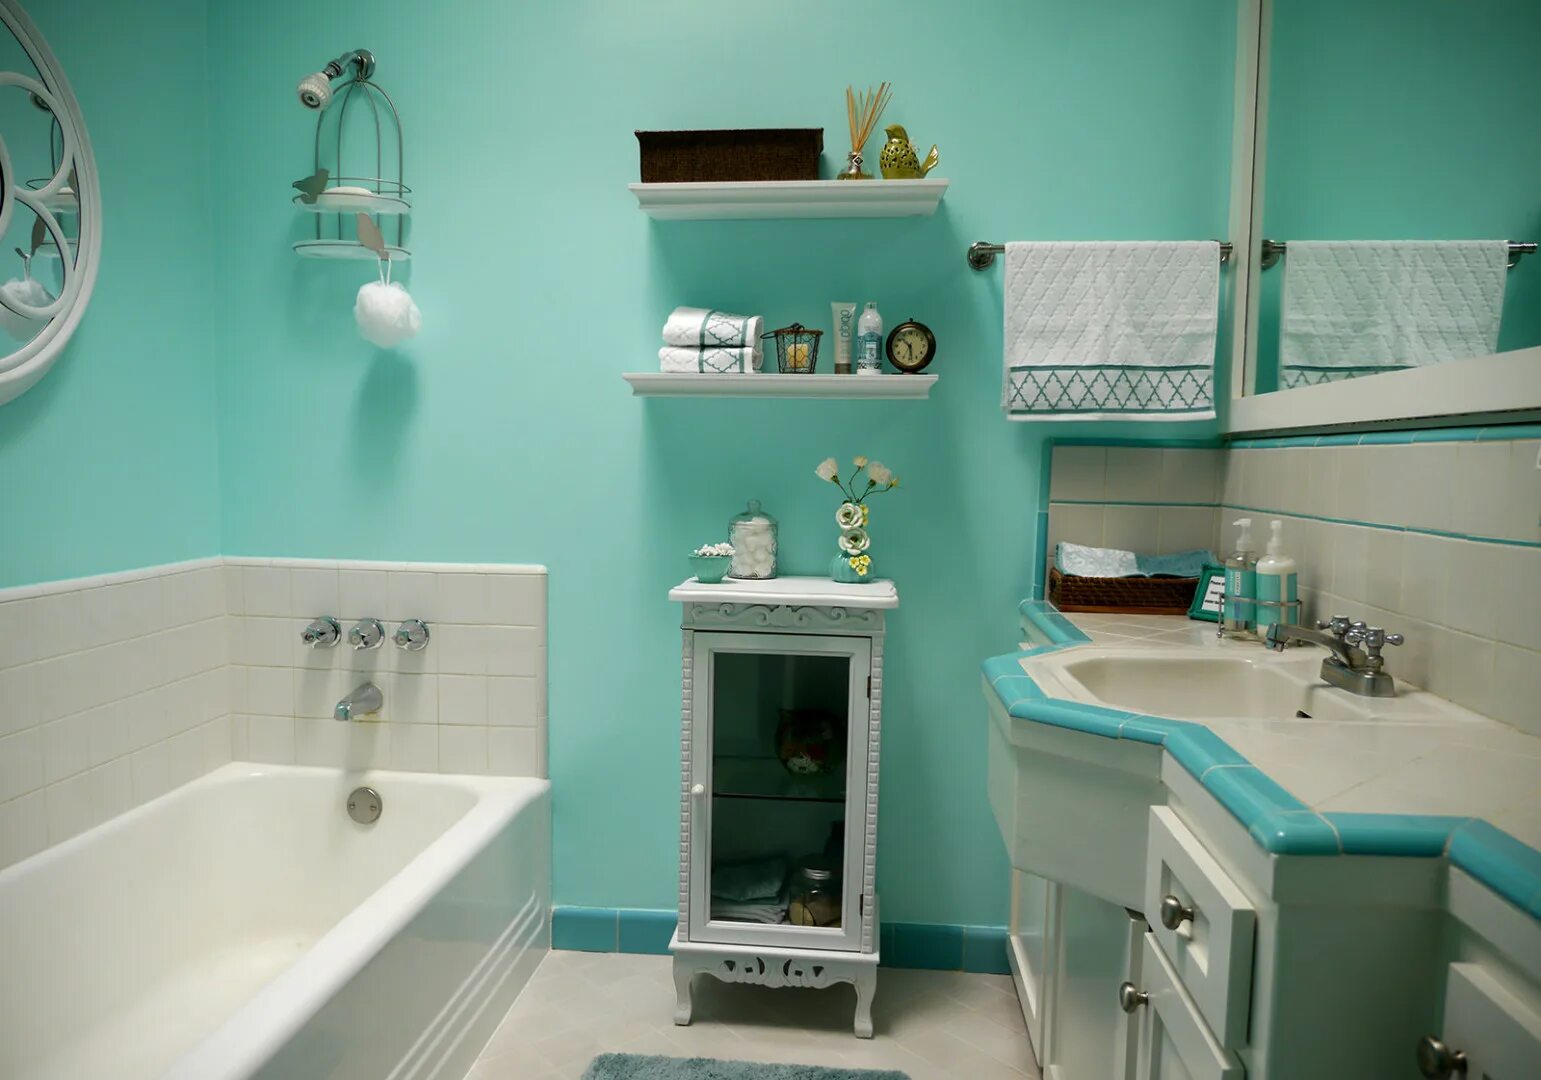 Стены в ванной. Краска для ванной комнаты. Покрашенная ванная комната. Окрашивание стен в ванной. Ванная комната цвета Тиффани.